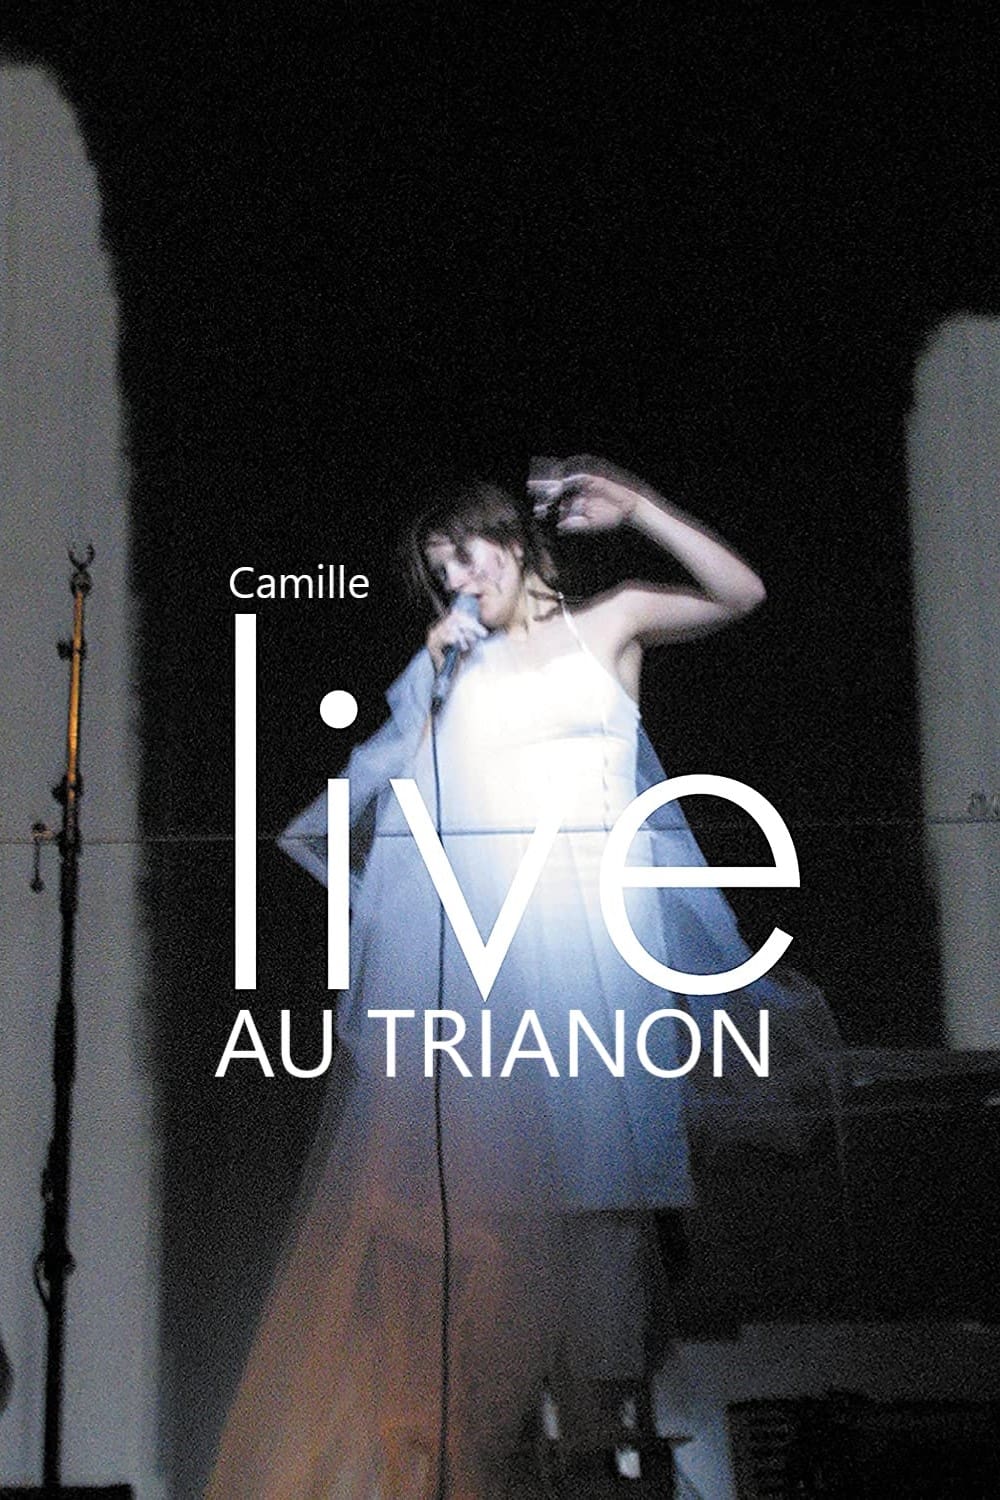 Camille : Alcaline, Le Concert